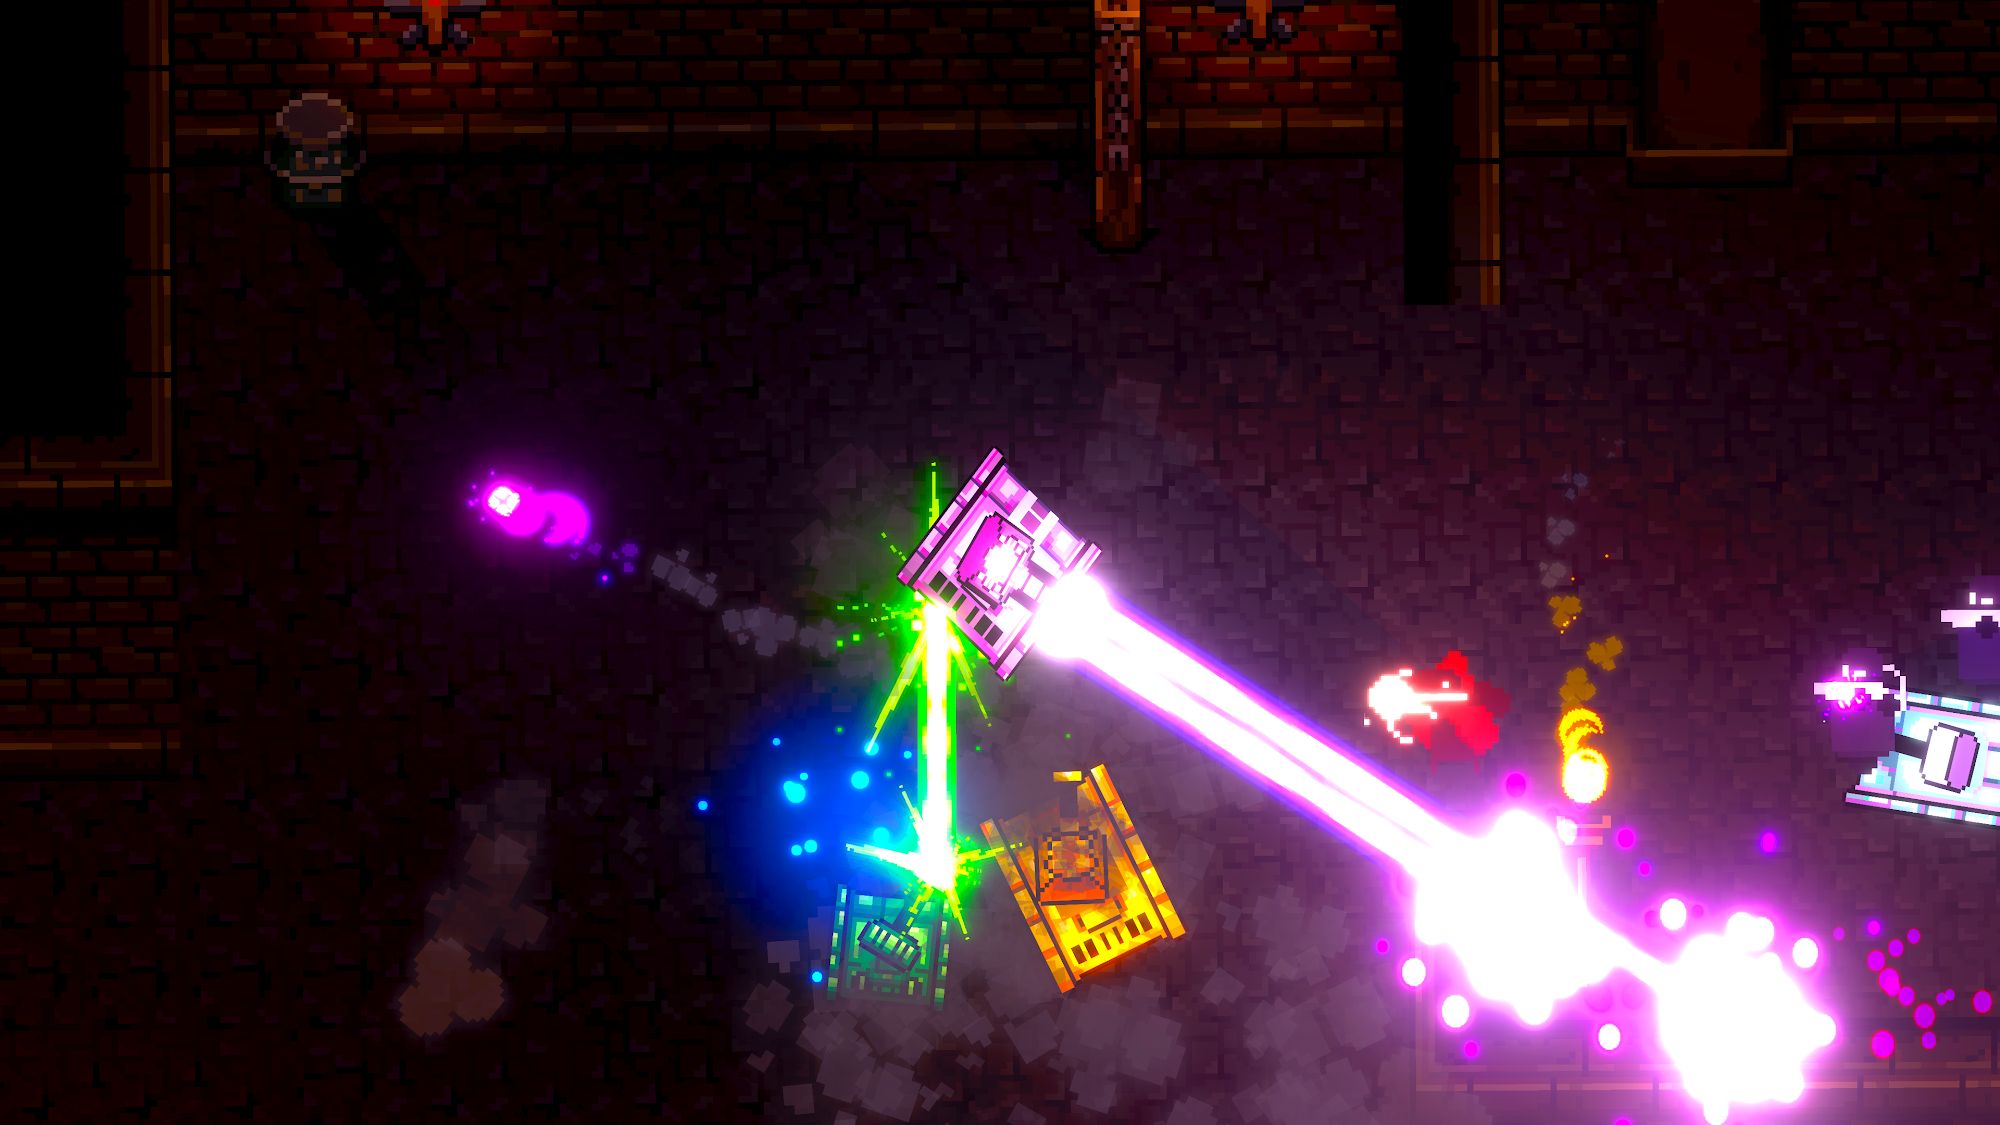 Laser Tanks: Pixel RPG - Android game screenshots.